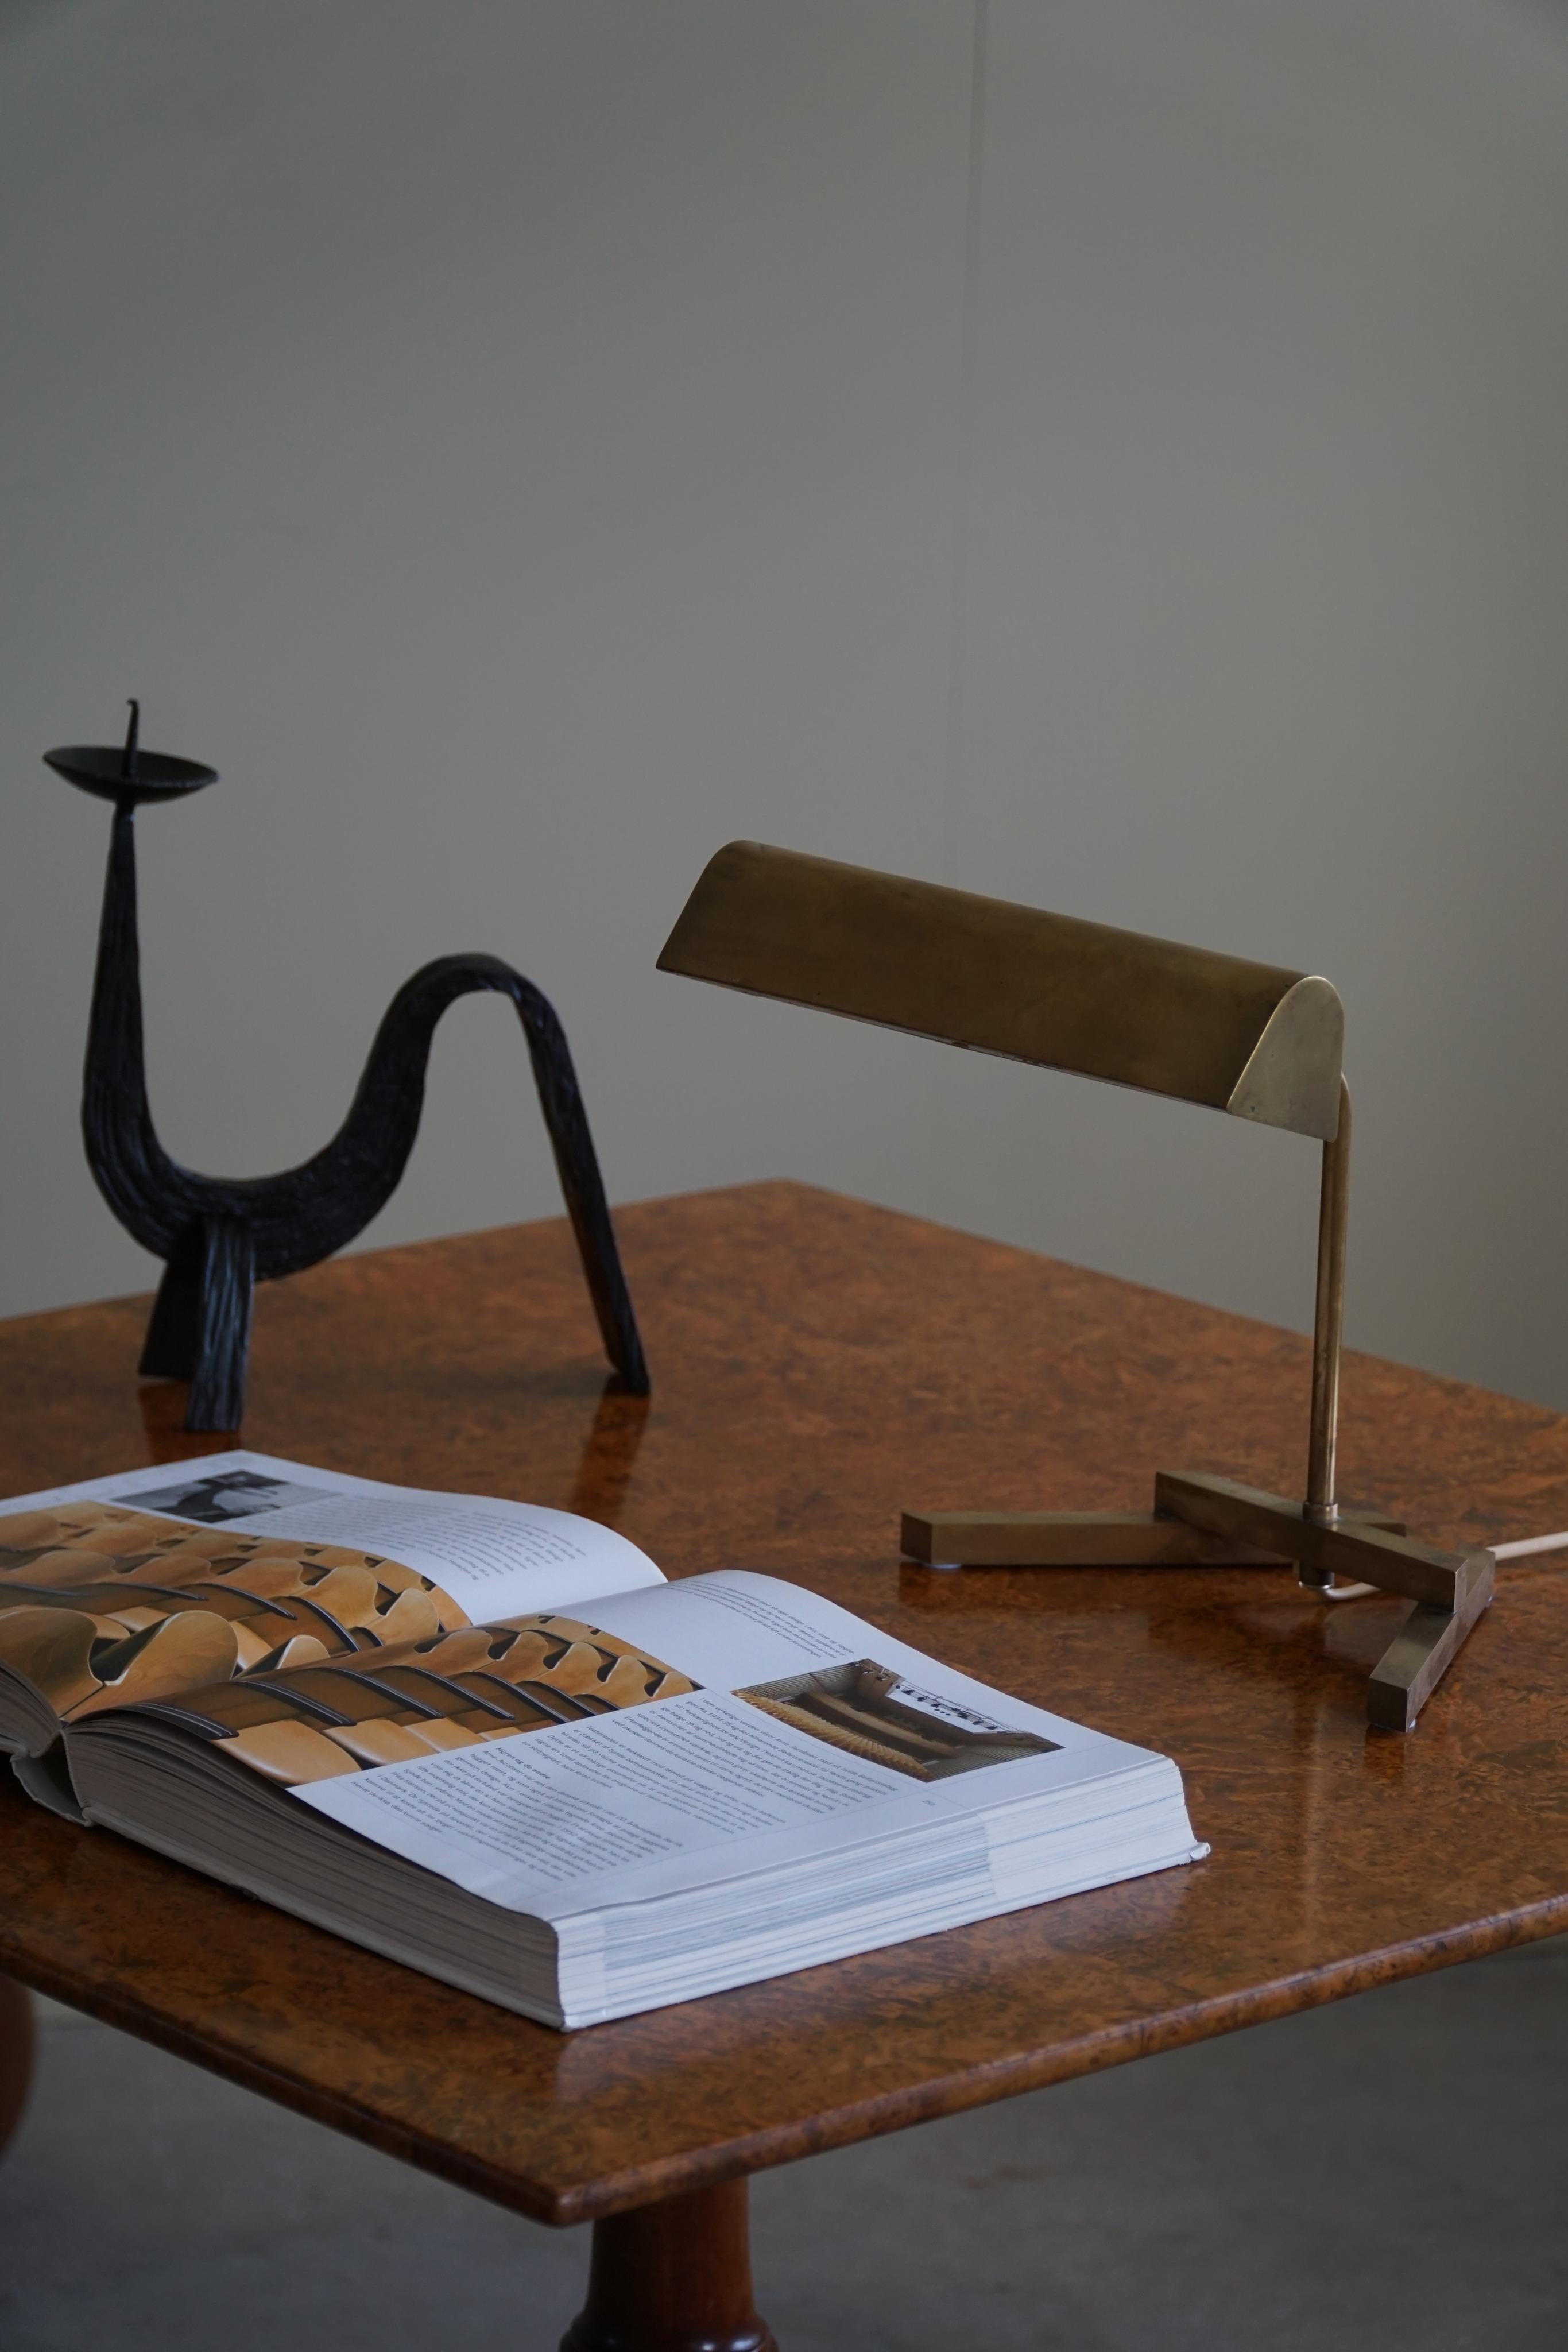 Peppen Sie Ihre Inneneinrichtung mit dieser beeindruckenden dänischen modernen Tischlampe aus den 1950er Jahren auf. Dieses mit viel Liebe zum Detail gefertigte geometrische Meisterwerk aus Messing verkörpert die Eleganz und Innovation des dänischen